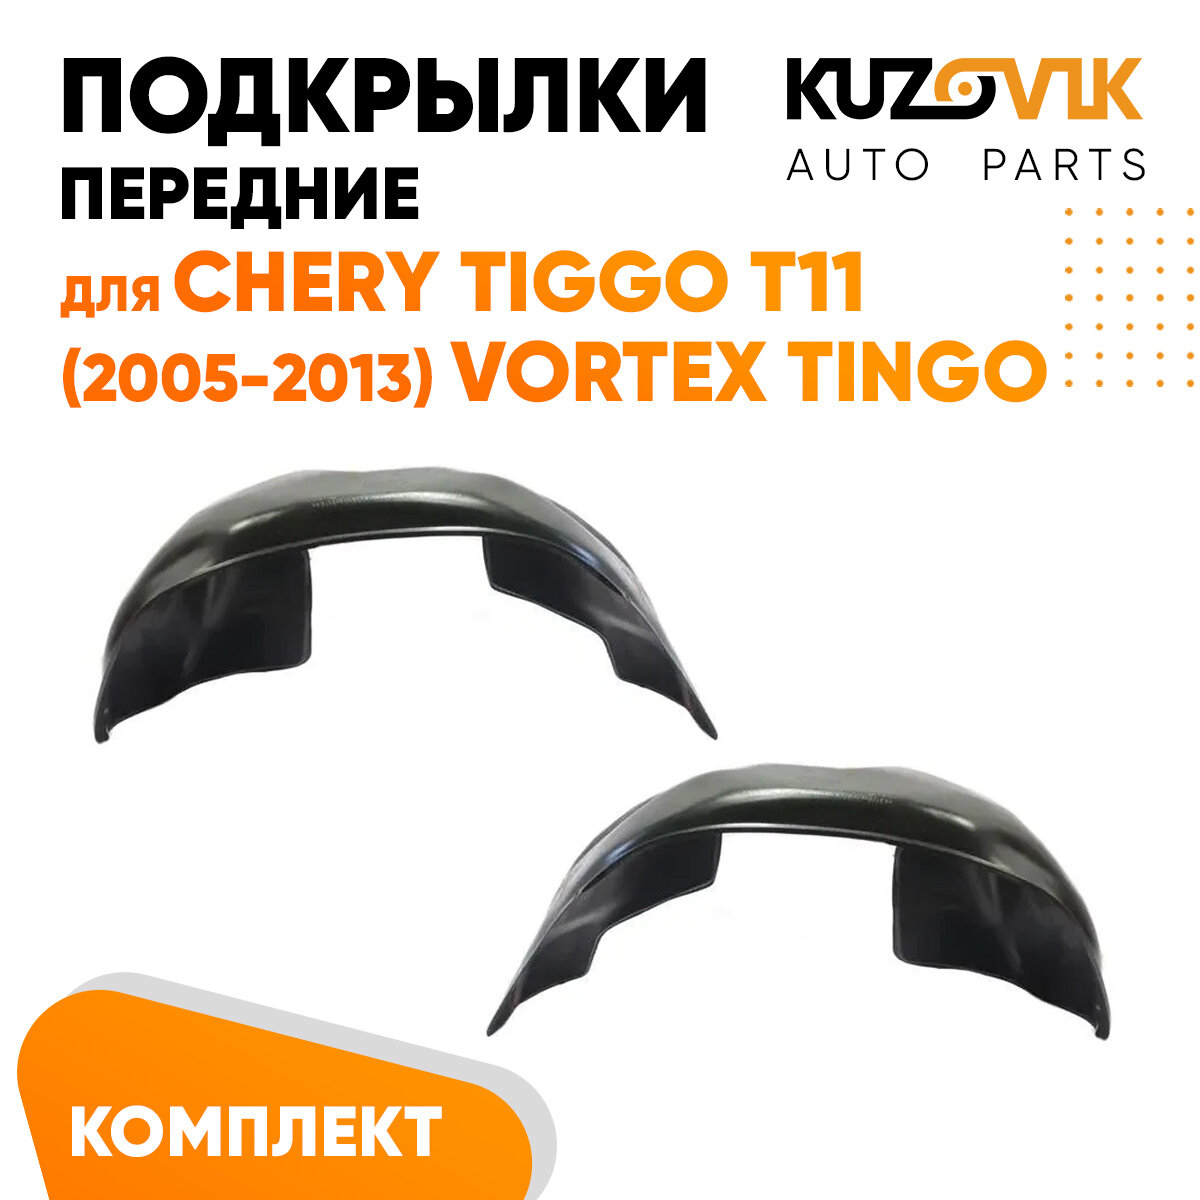 Подкрылки передние Chery Tiggo T11 (2005-2013) Vortex Tingo 2 шт правый + левый